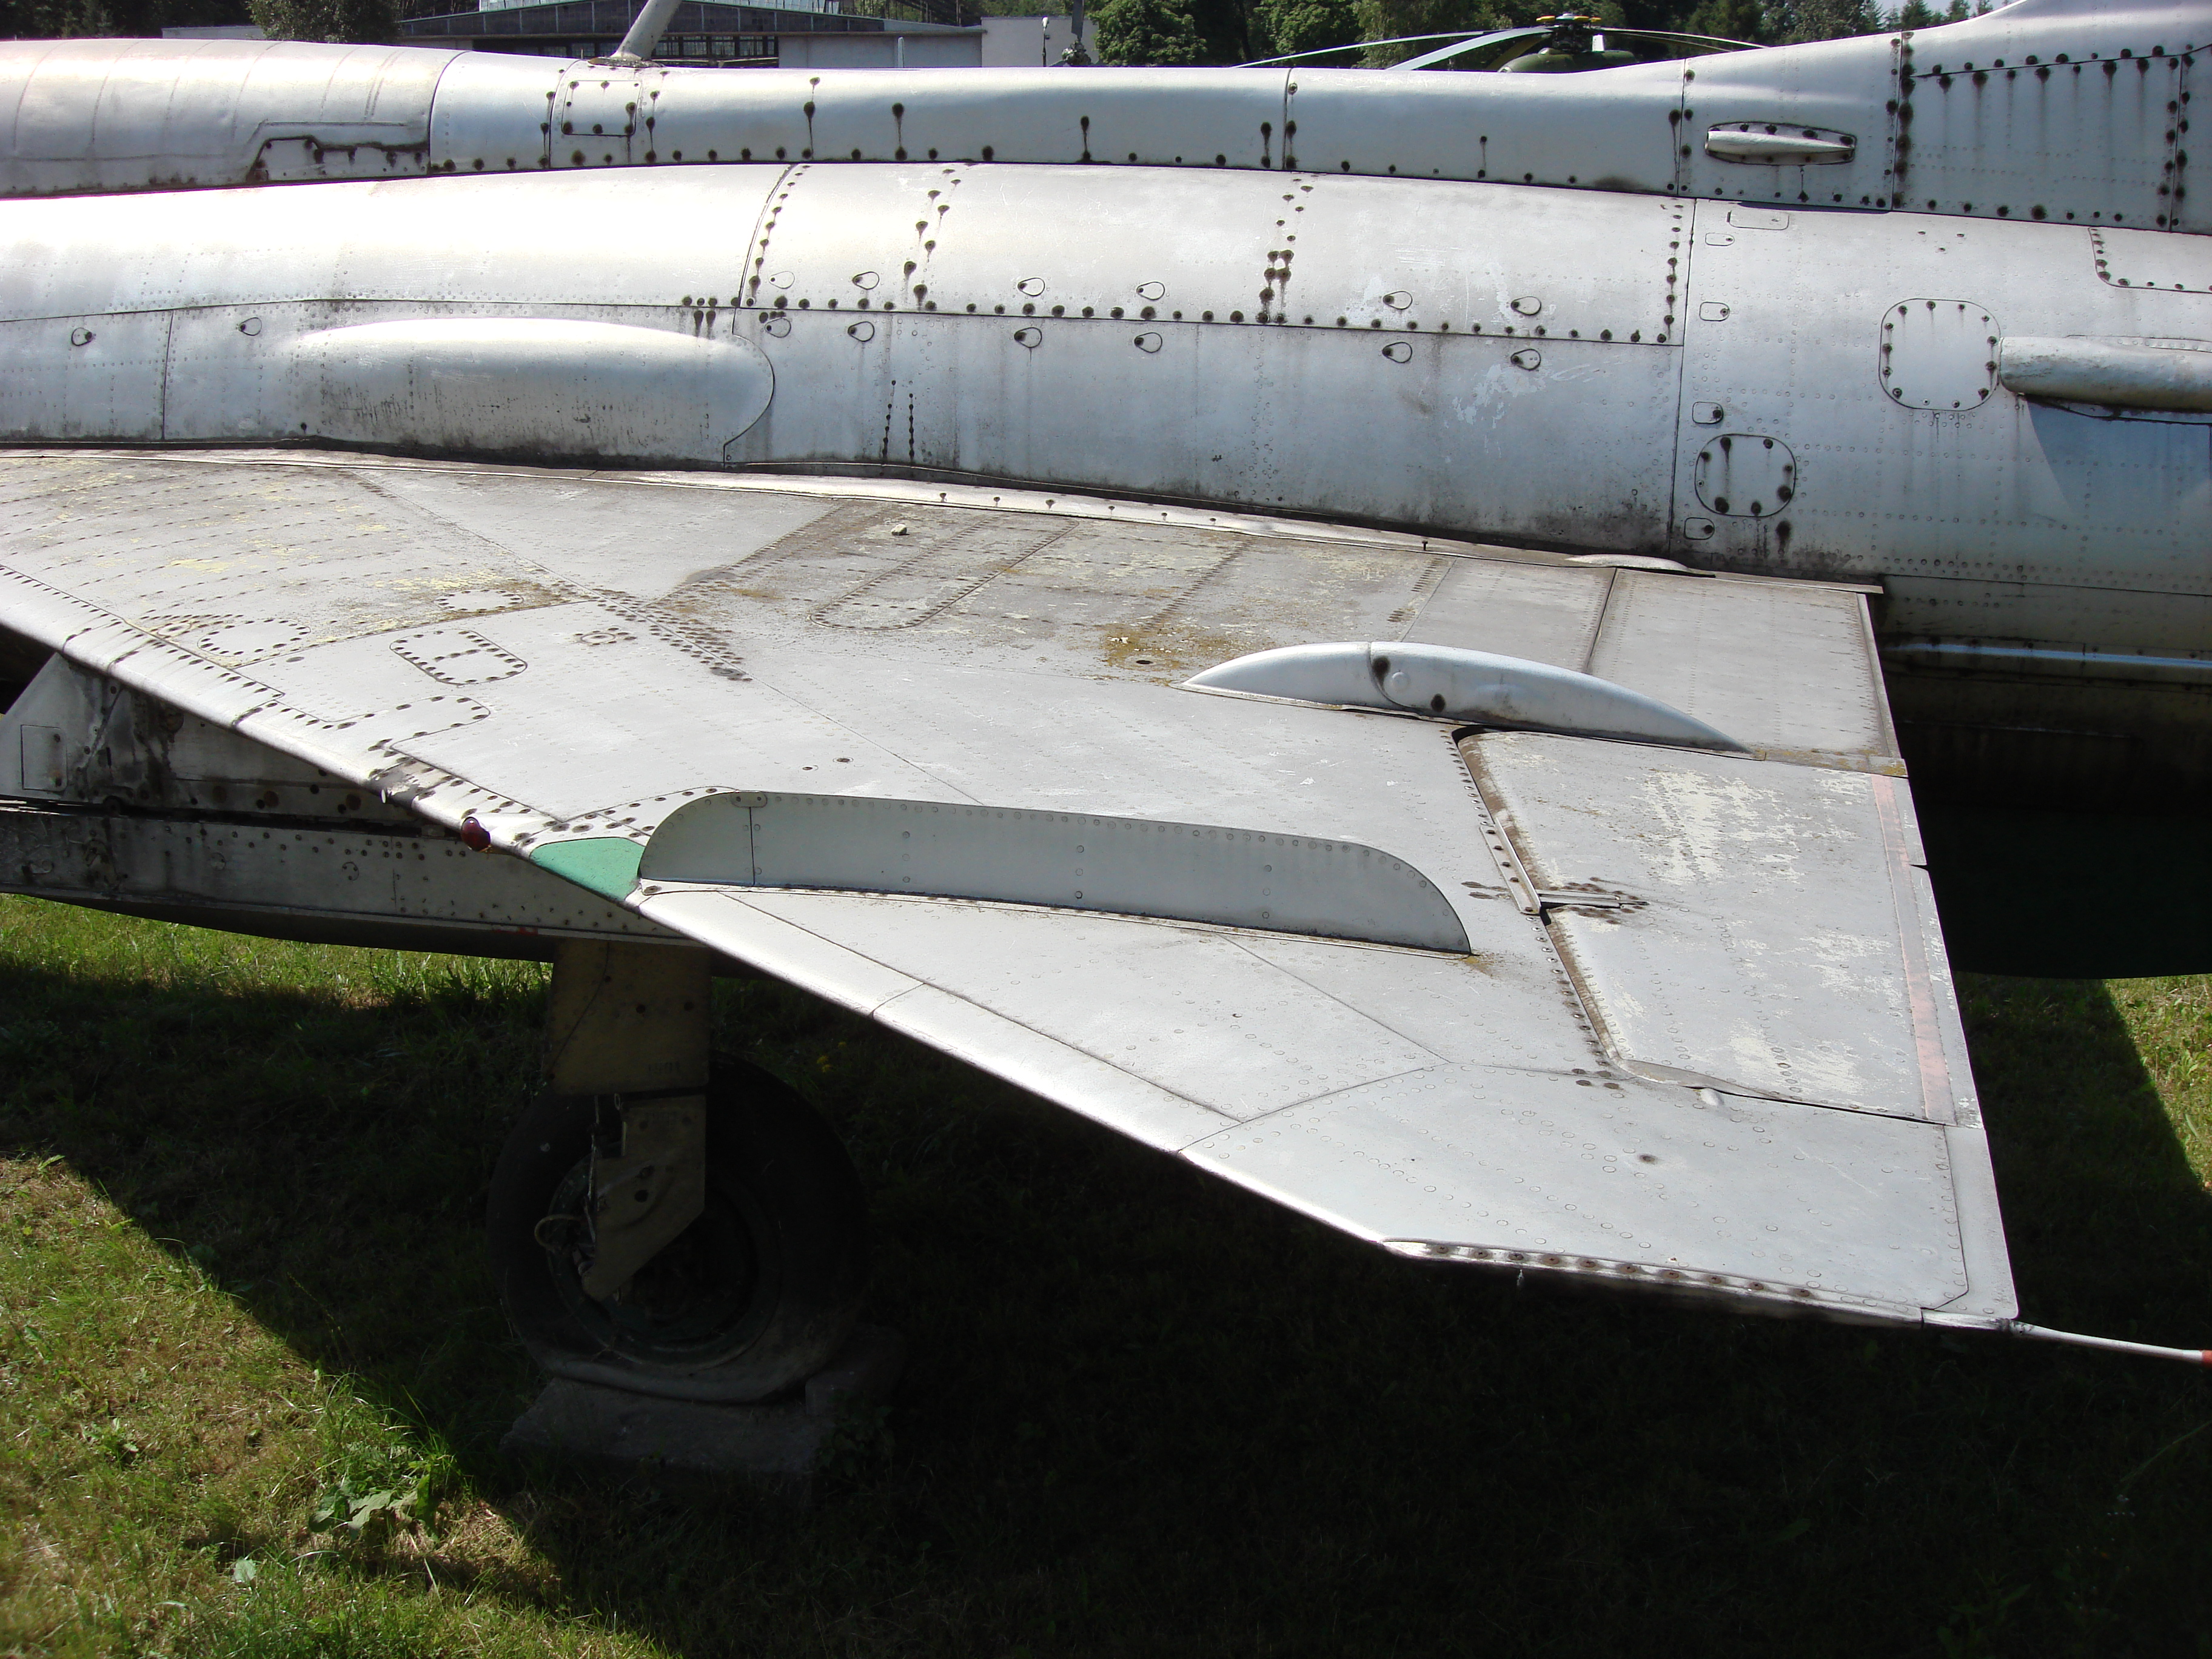 Lewe skrzydło MiG-21 PF nb 1901 Czyżyny 2006 rok. Zdjęcie Karol Placha Hetman